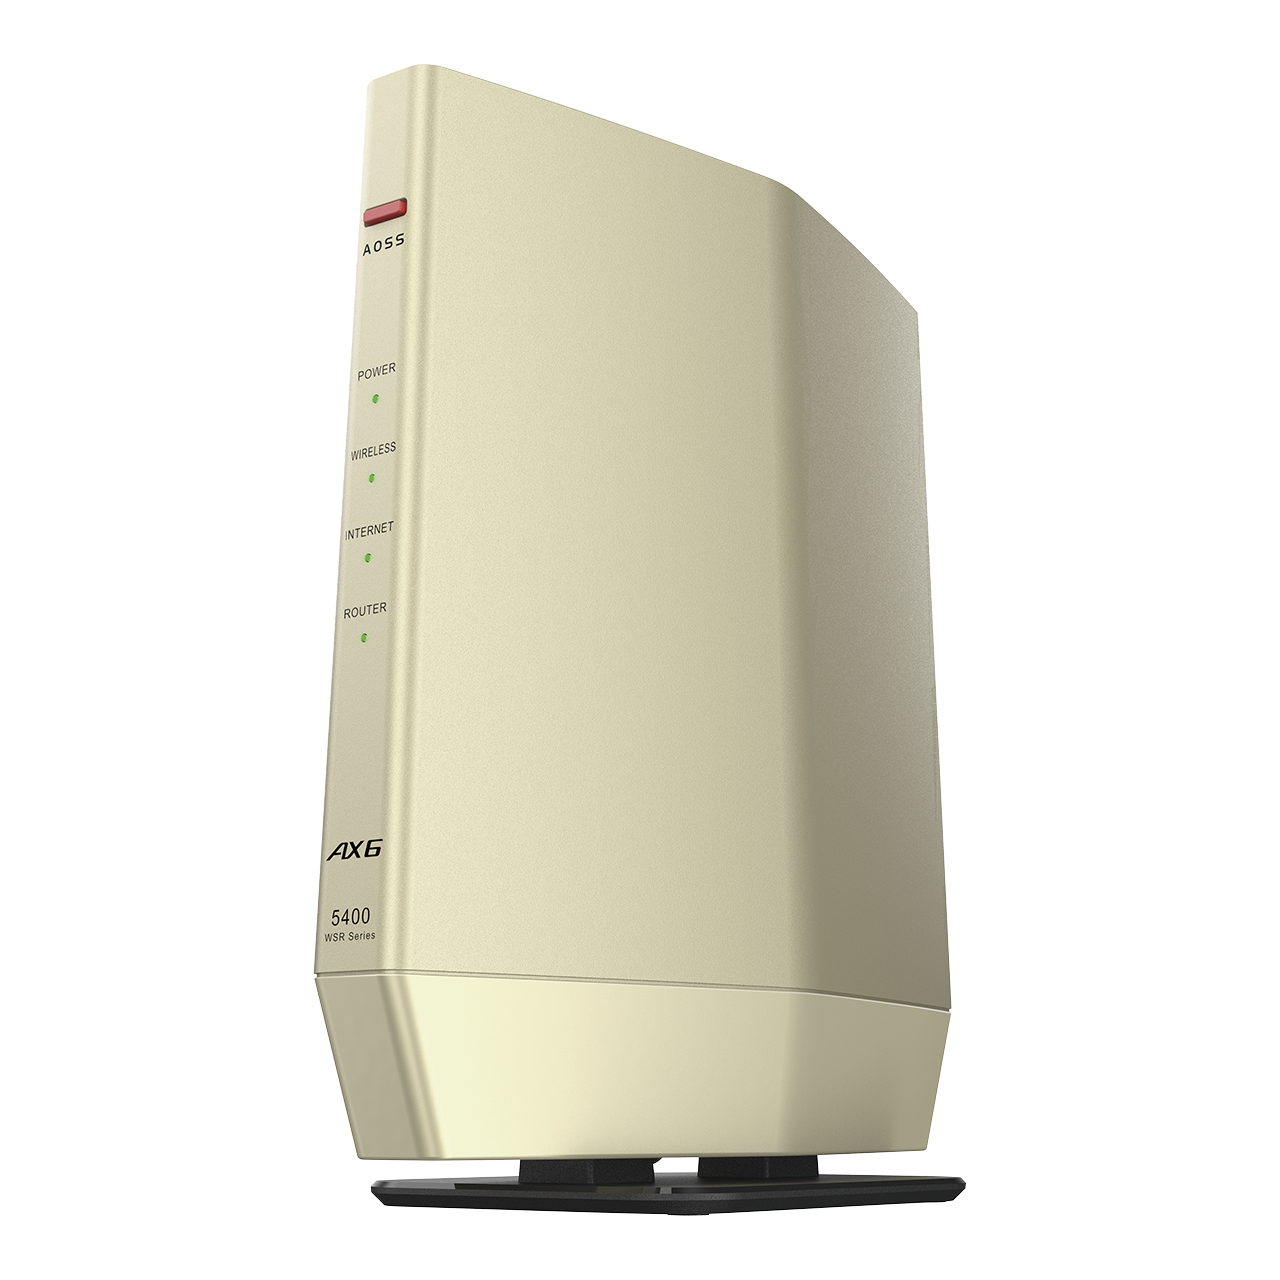 最新機種 BUFFALO WSR-5400AX6S-MB 新品未使用未開封PC/タブレット